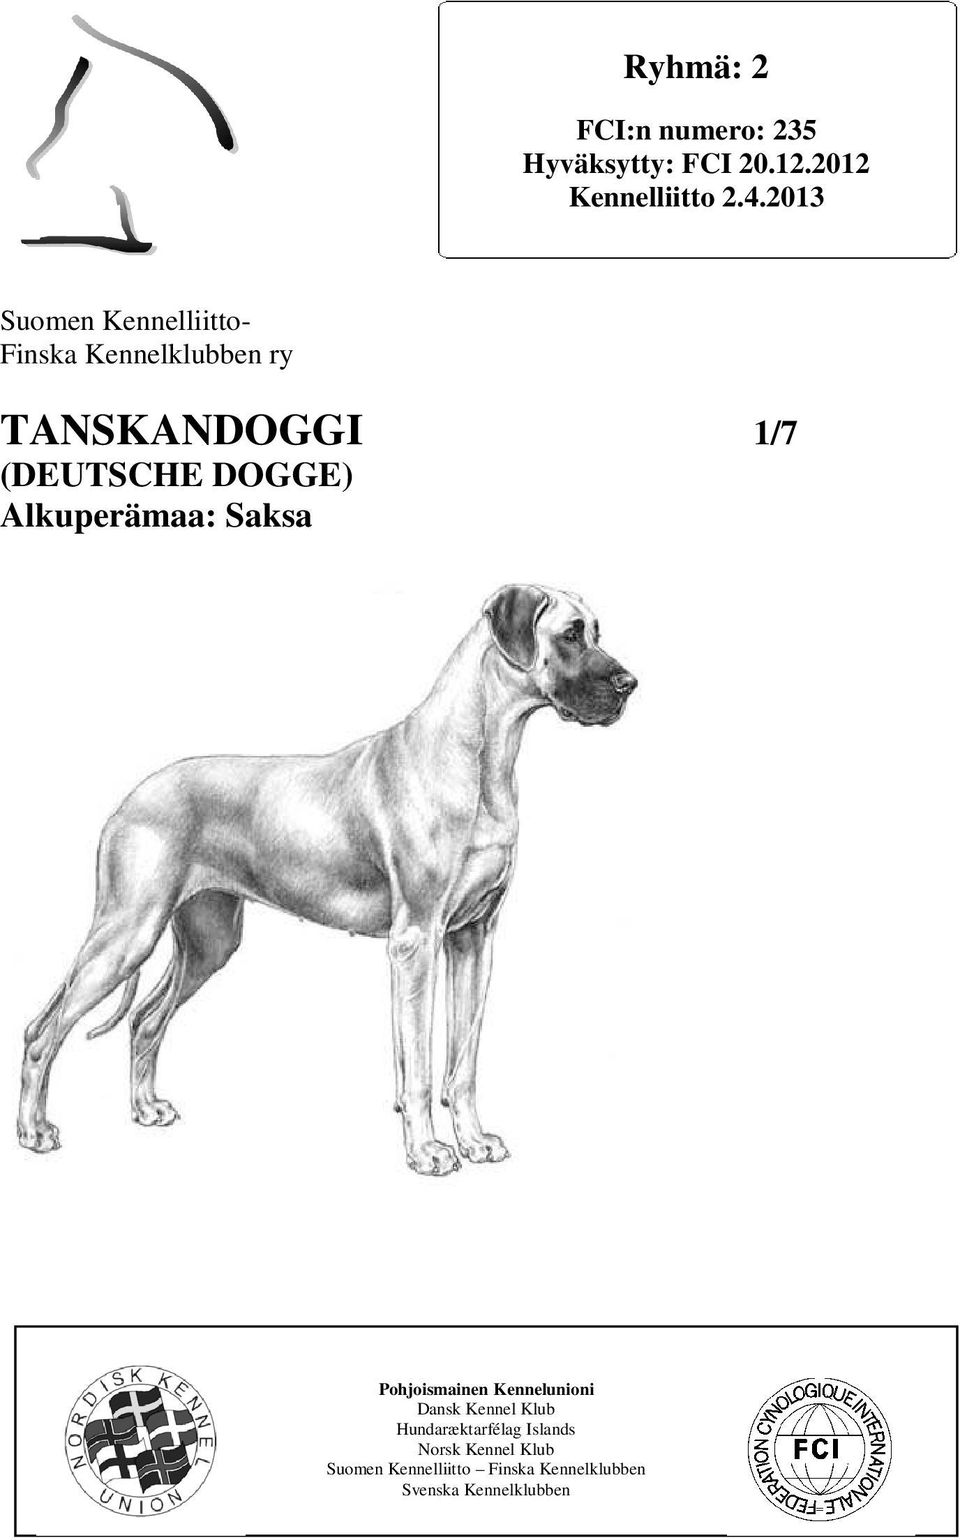 DOGGE) Alkuperämaa: Saksa Pohjoismainen Kennelunioni Dansk Kennel Klub